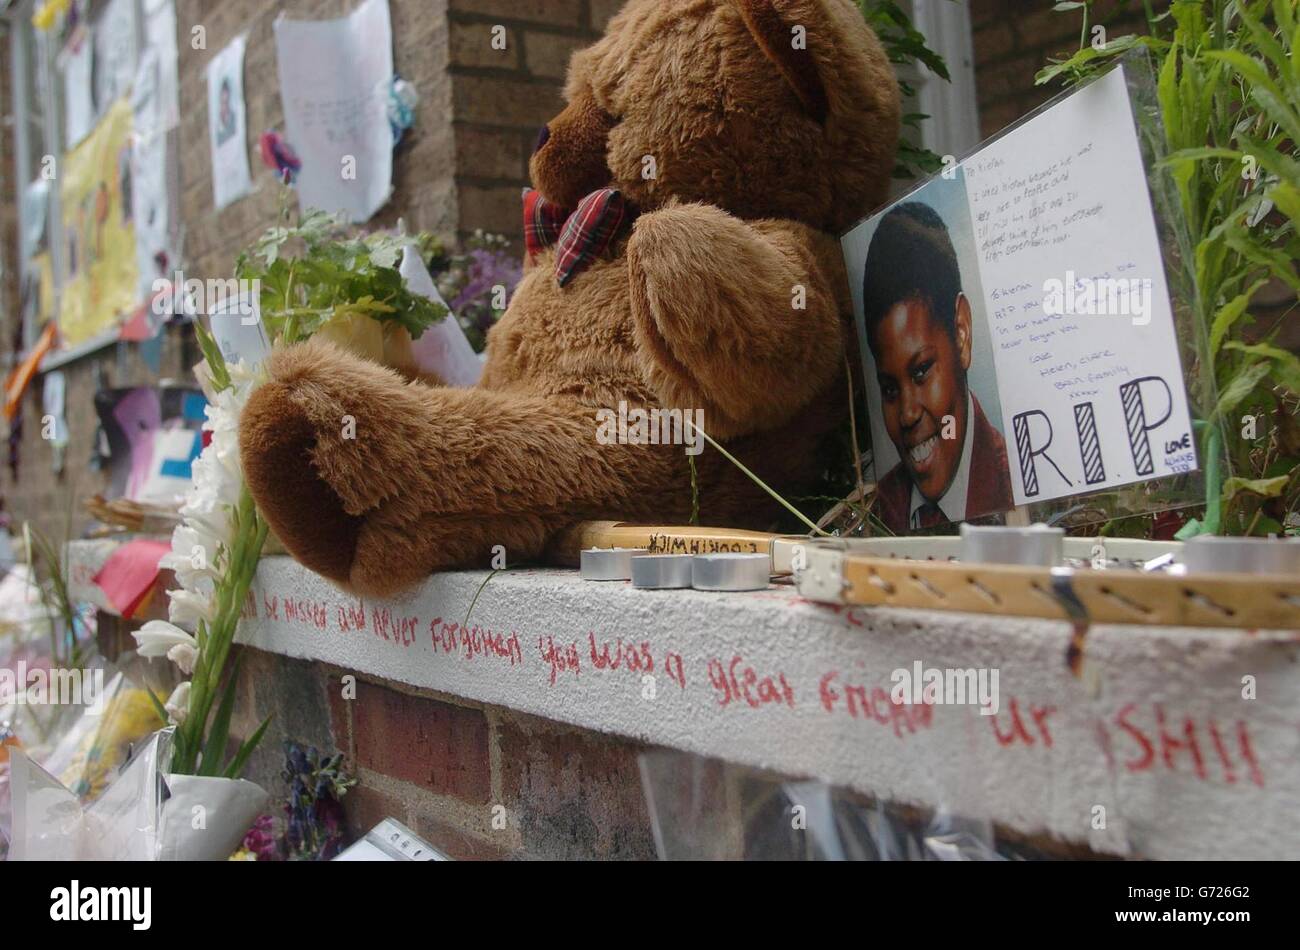 Tribute für den verstümmelt Schuljungen Kieran Rodney-Davis steigen bei einer Gedenkfeier für den 15-Jährigen an der Stelle auf, an der er am Sulivan Court in Fulham, West London, ermordet wurde. Dort wurde Kieran wegen seines Mobiltelefons erstochen und zwei 16-Jährige sollen des Mordes angeklagt worden sein. Stockfoto